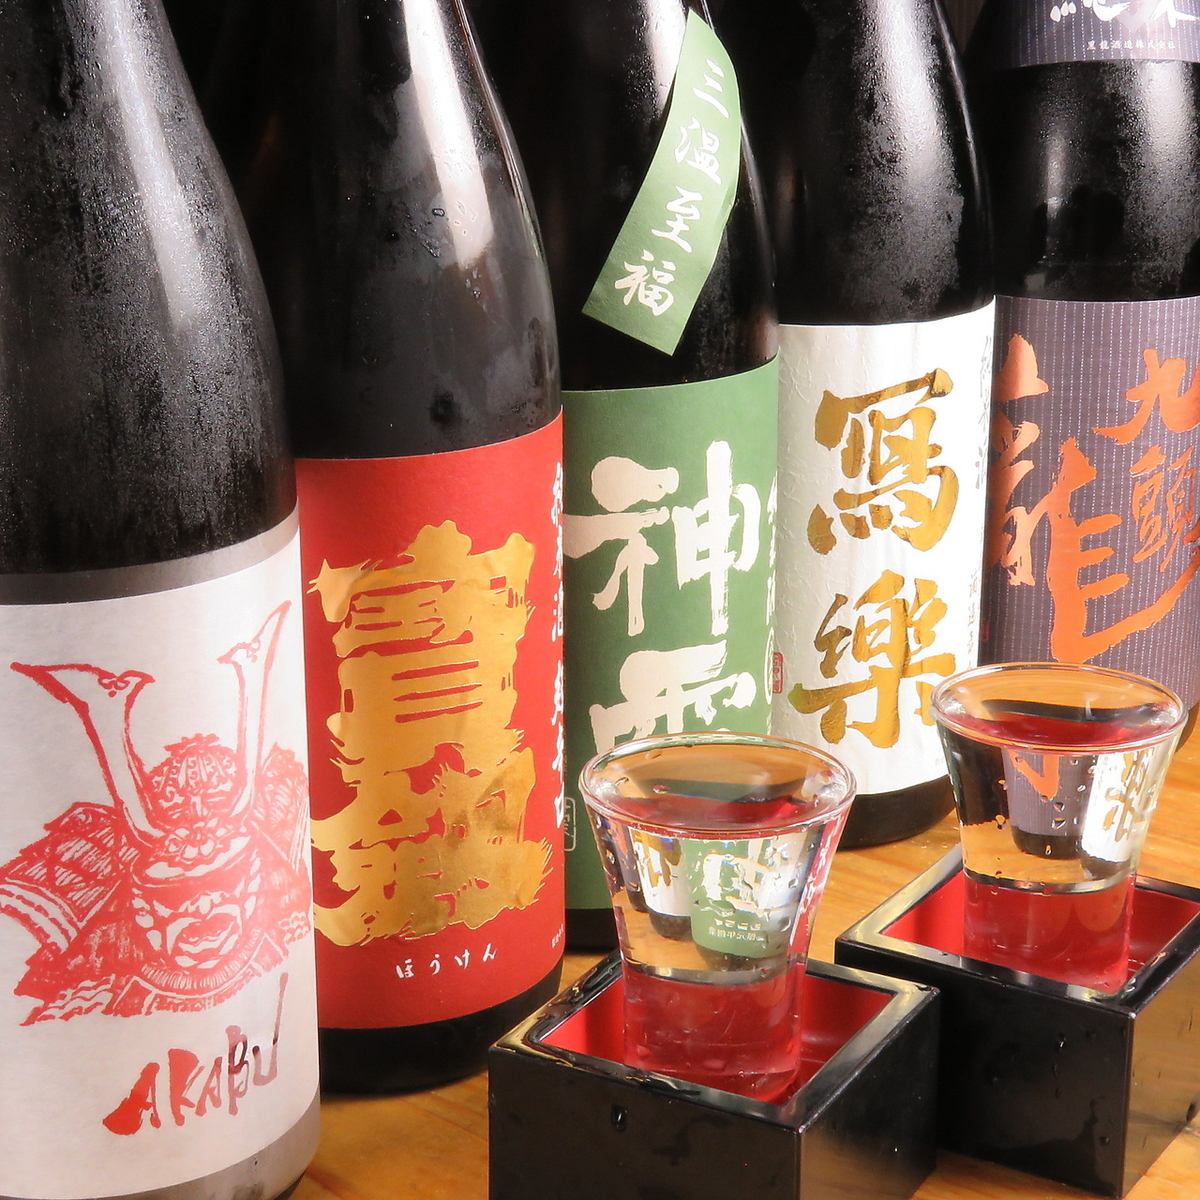 프리미엄 음료 무제한 2시간 2000엔은 일본술도 마실 수 있습니다!!